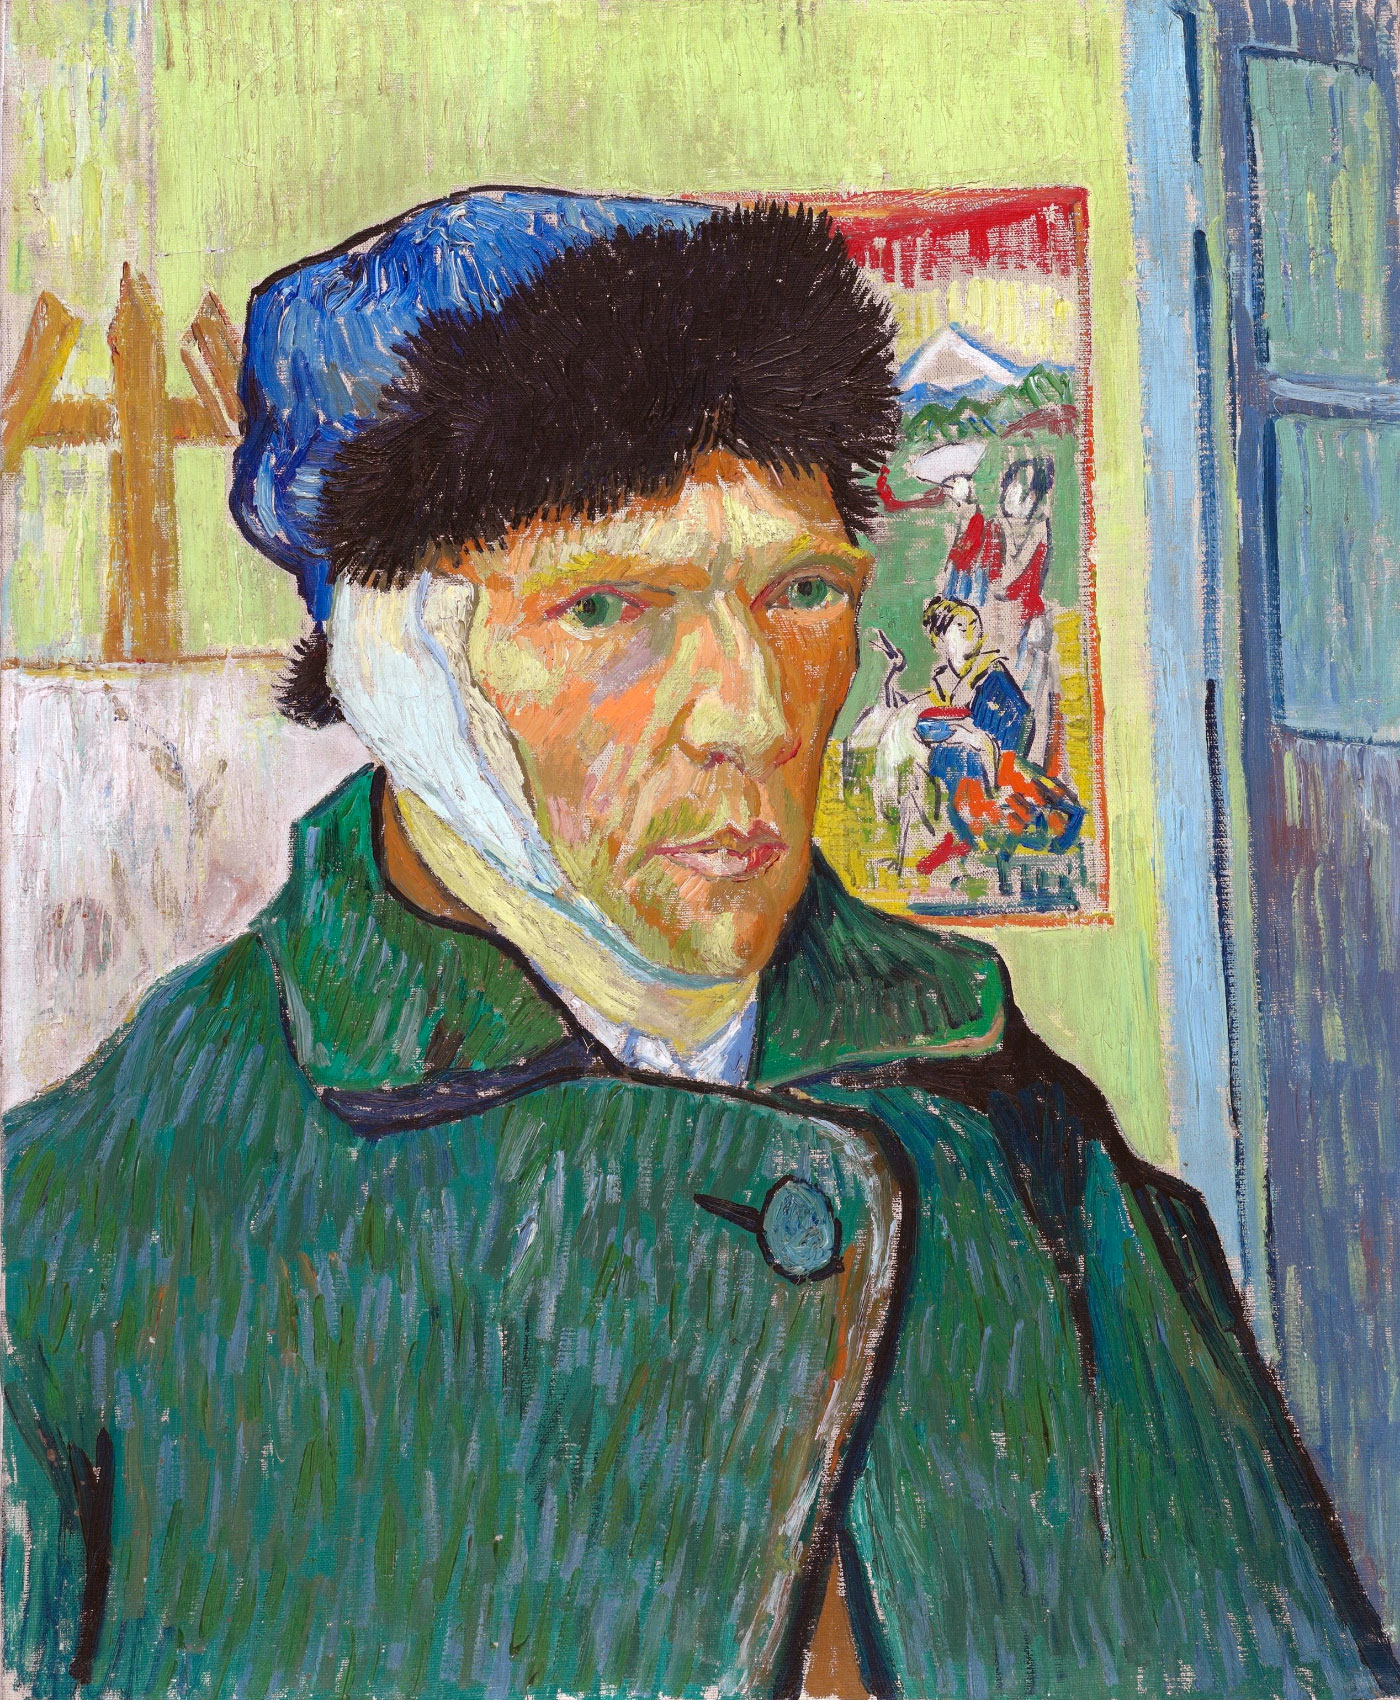 Van Gogh: Autoritratto con l'orecchio bendato (Self-portrait with bandaged ear)